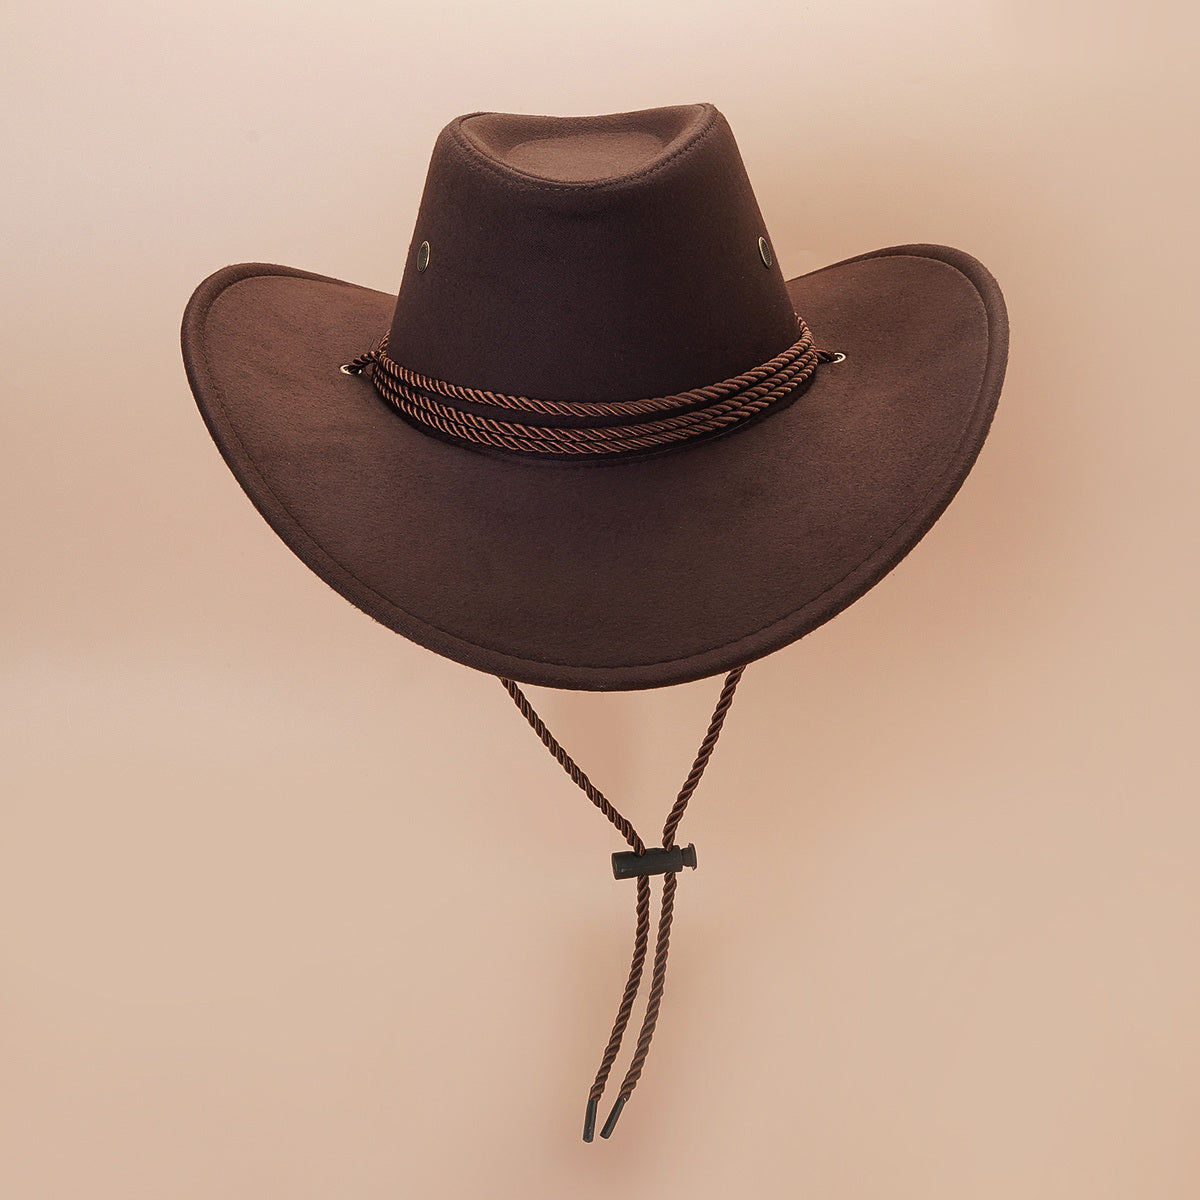 Western Cowboy Hat Vintage Jazz Hat Outdoor Fishing Cowgirl Sun Hat Wide Brim Summer Sunscreen Travel Beach Hat